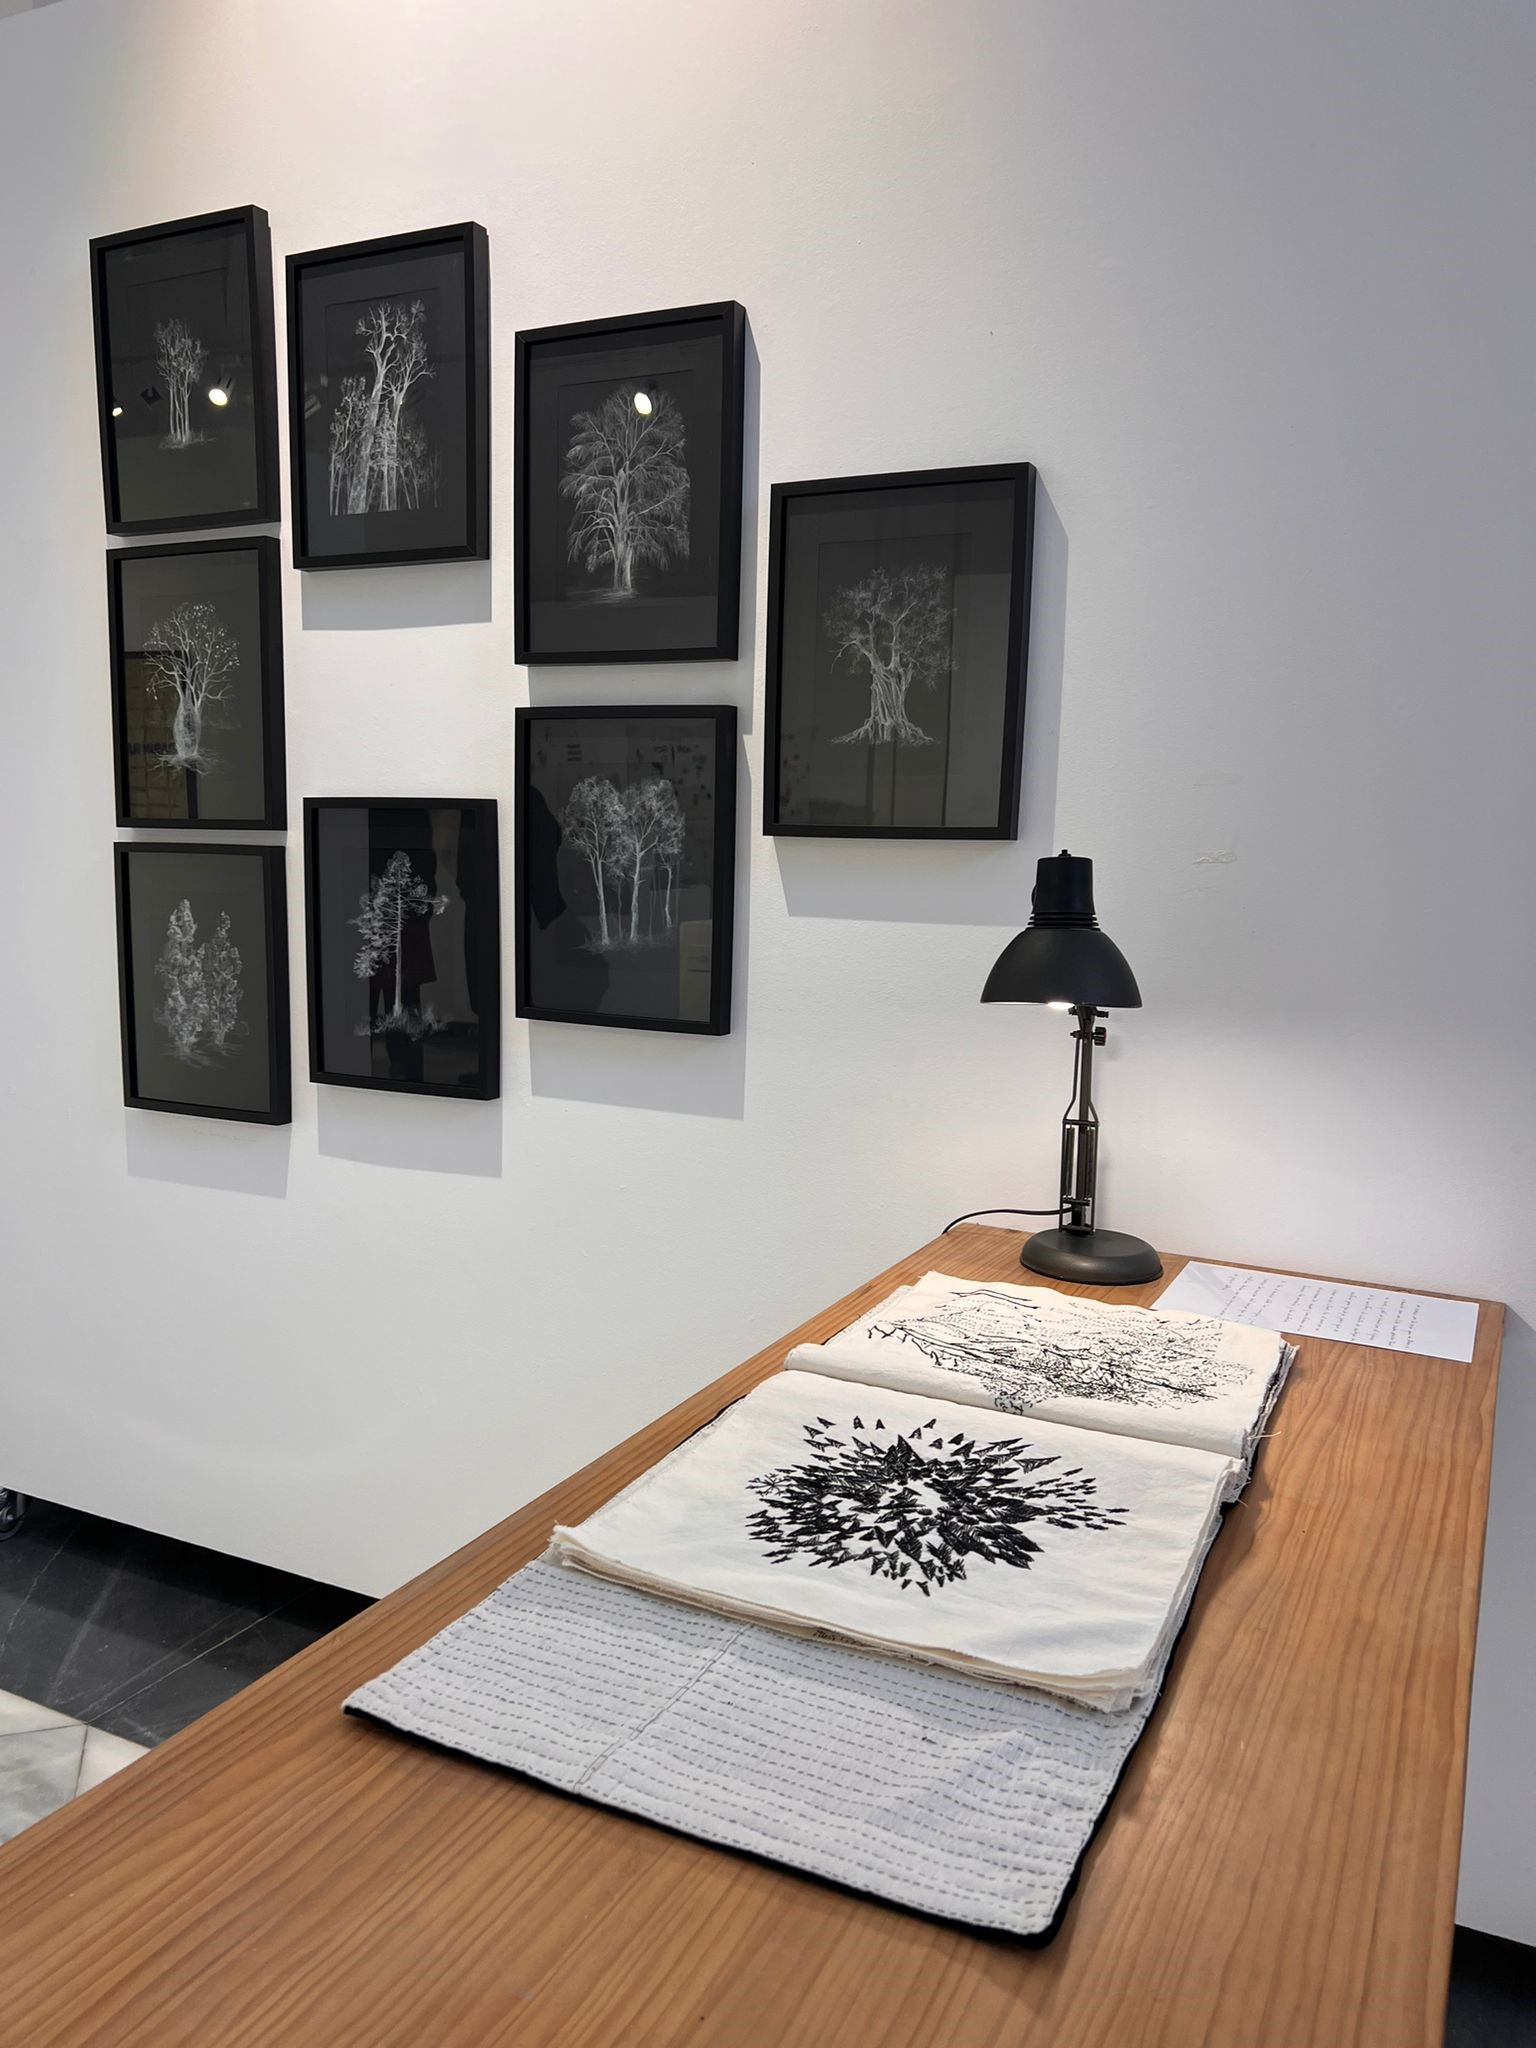 La artista Claudia Martínez gana el I Premio Arte Textil Contemporáneo convocado por el Instituto Gil-Albert